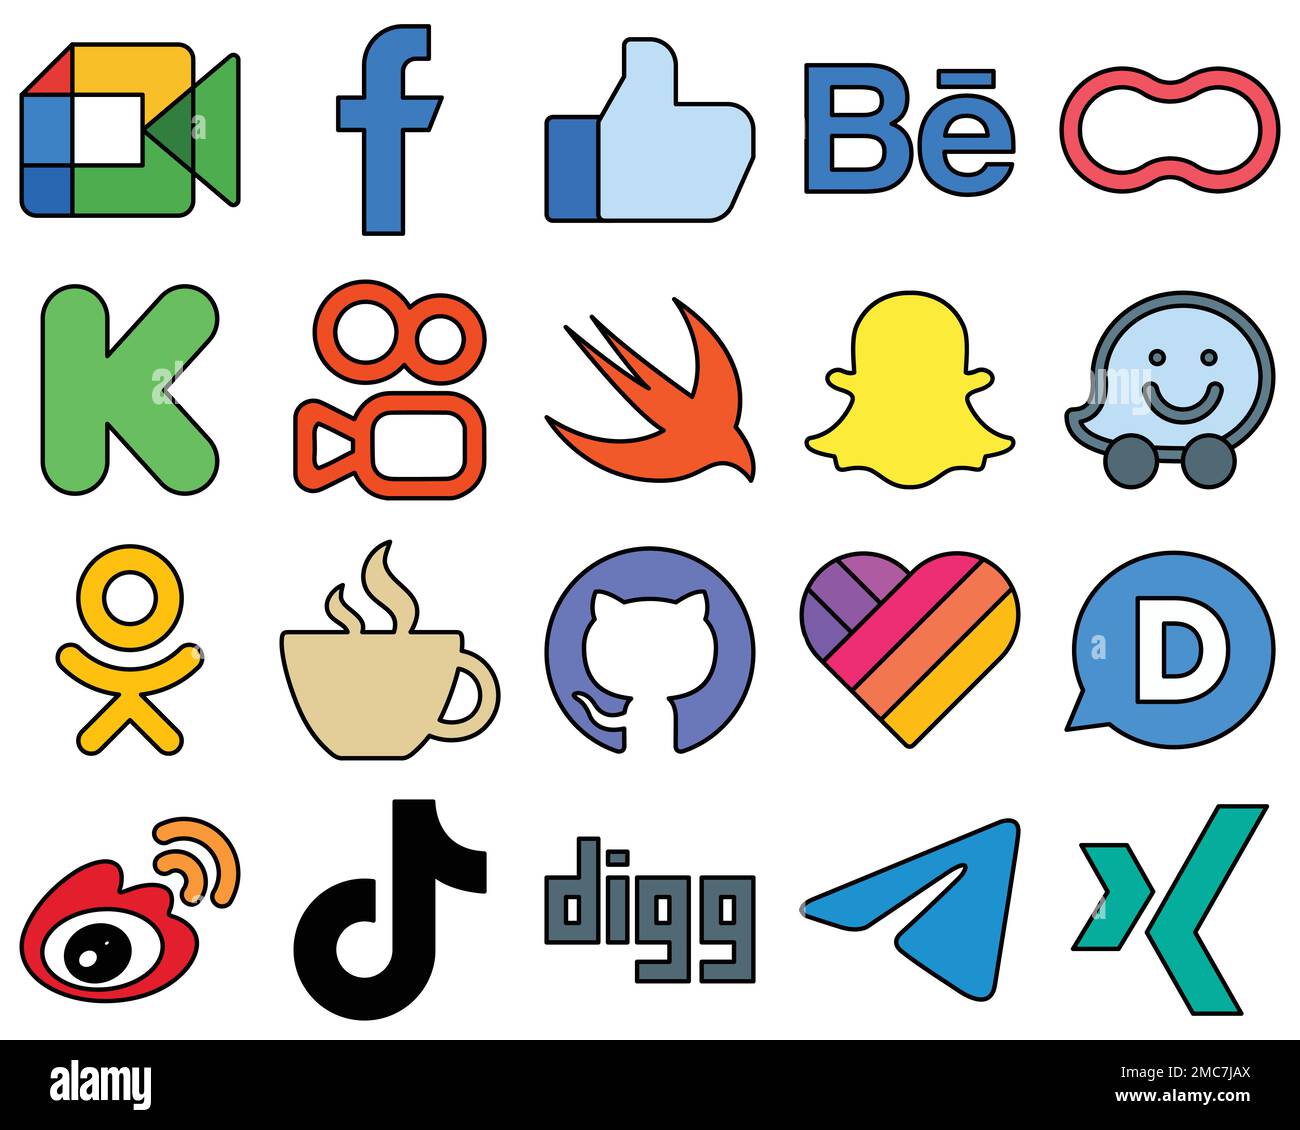 20 unverwechselbare Symbole für soziale Medien wie waze. Schnell. behance. Kuaishou und Kickstarter einzigartig und professionell Stock Vektor